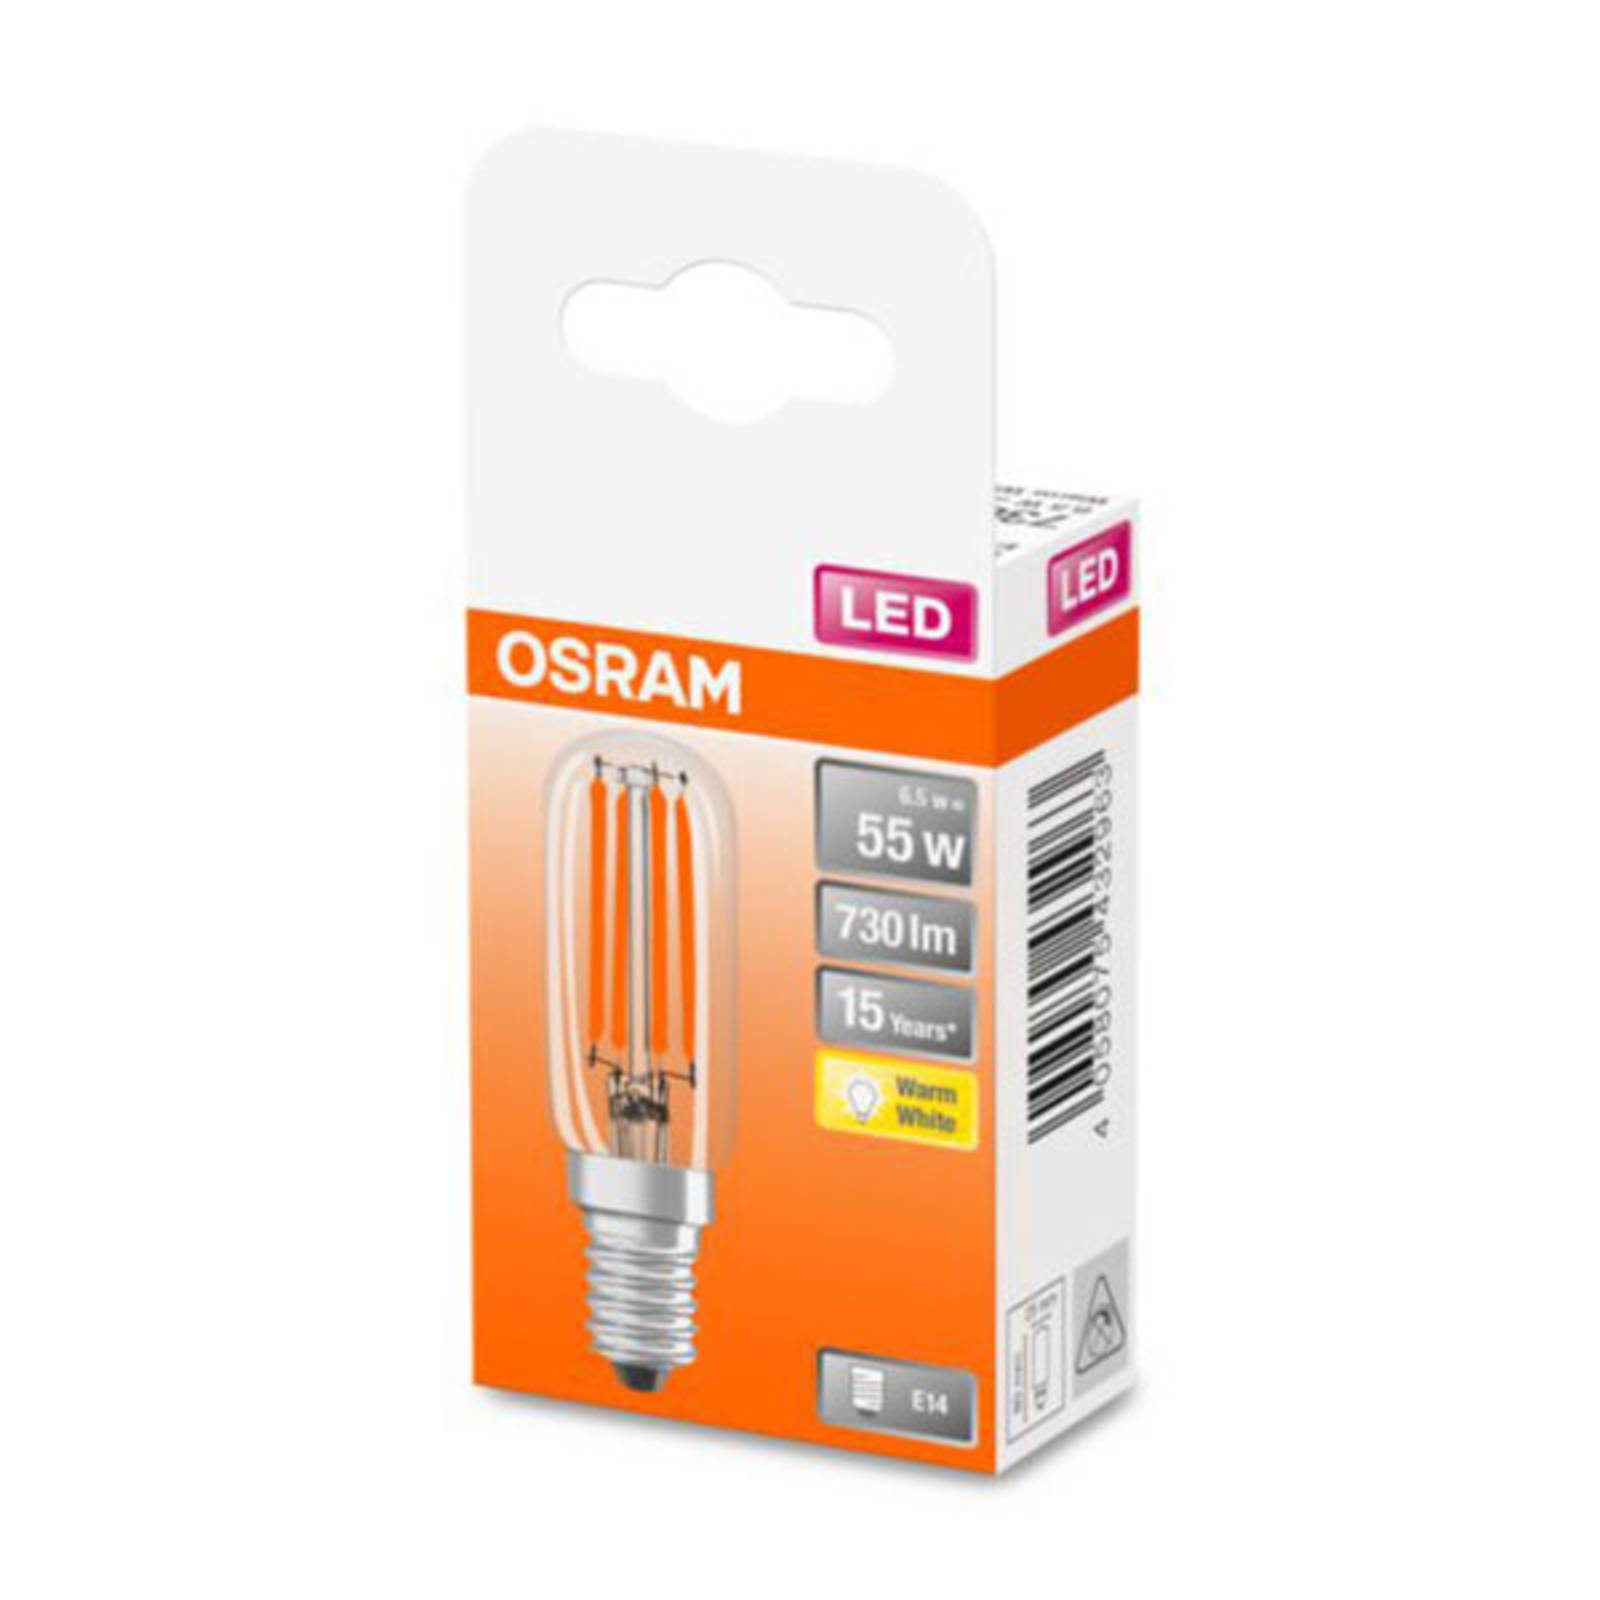 OSRAM OSRAM LED Special T26 E14 6,5W 827 Filament